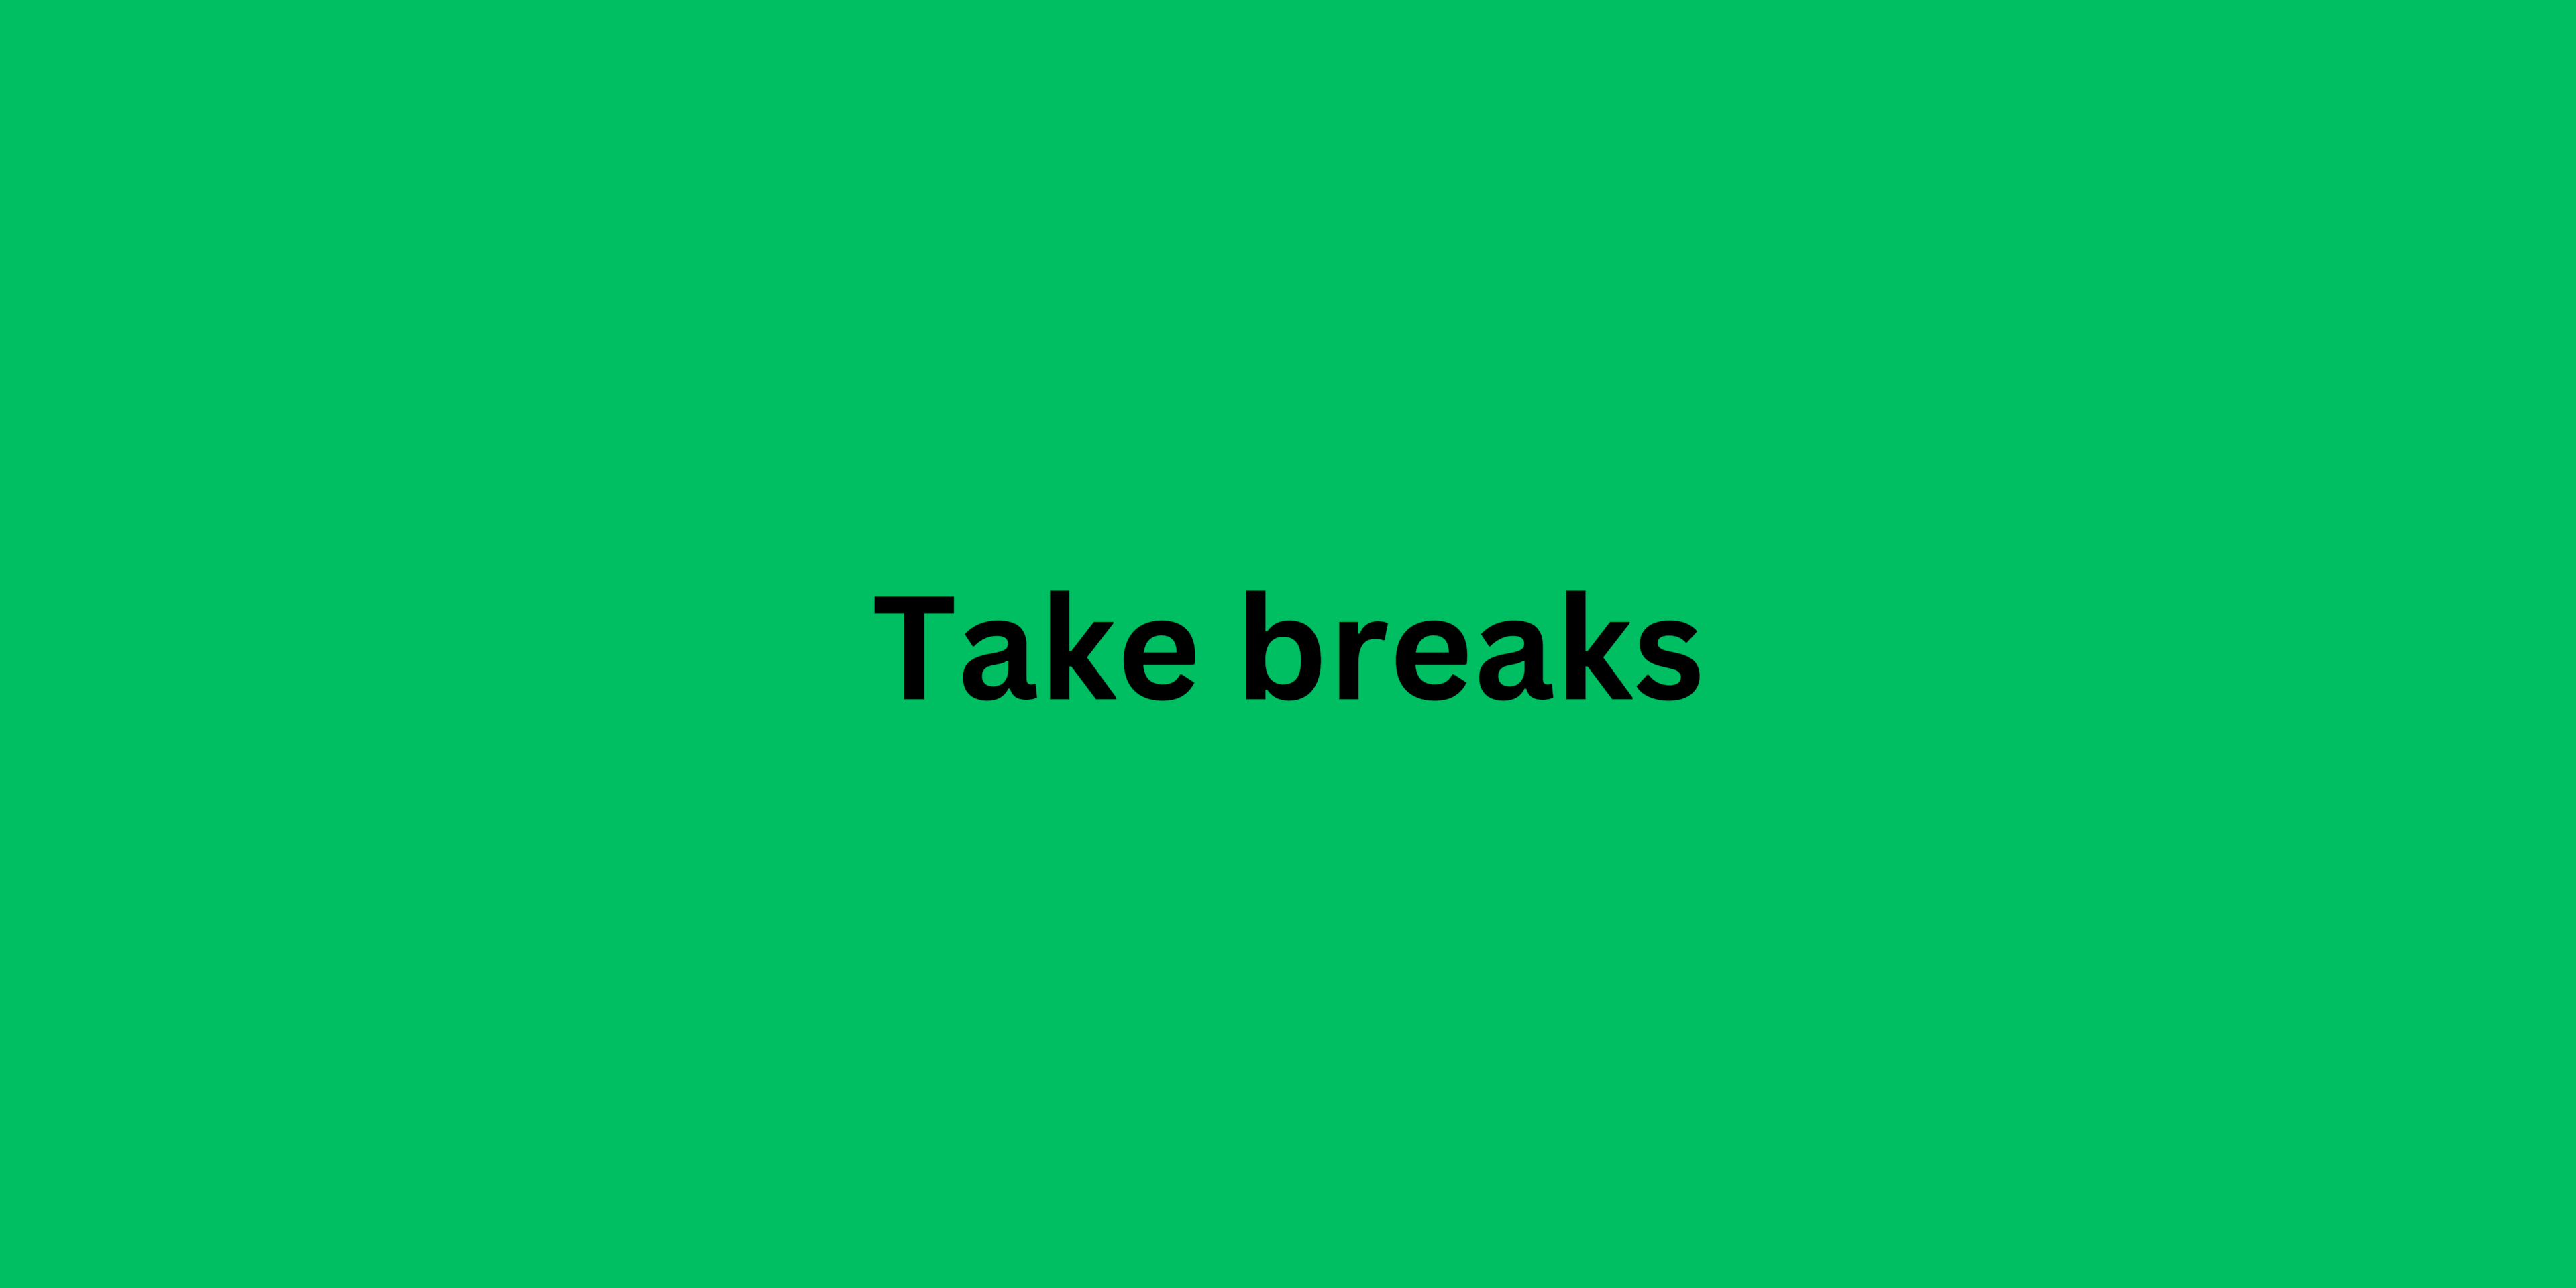 Take breaks